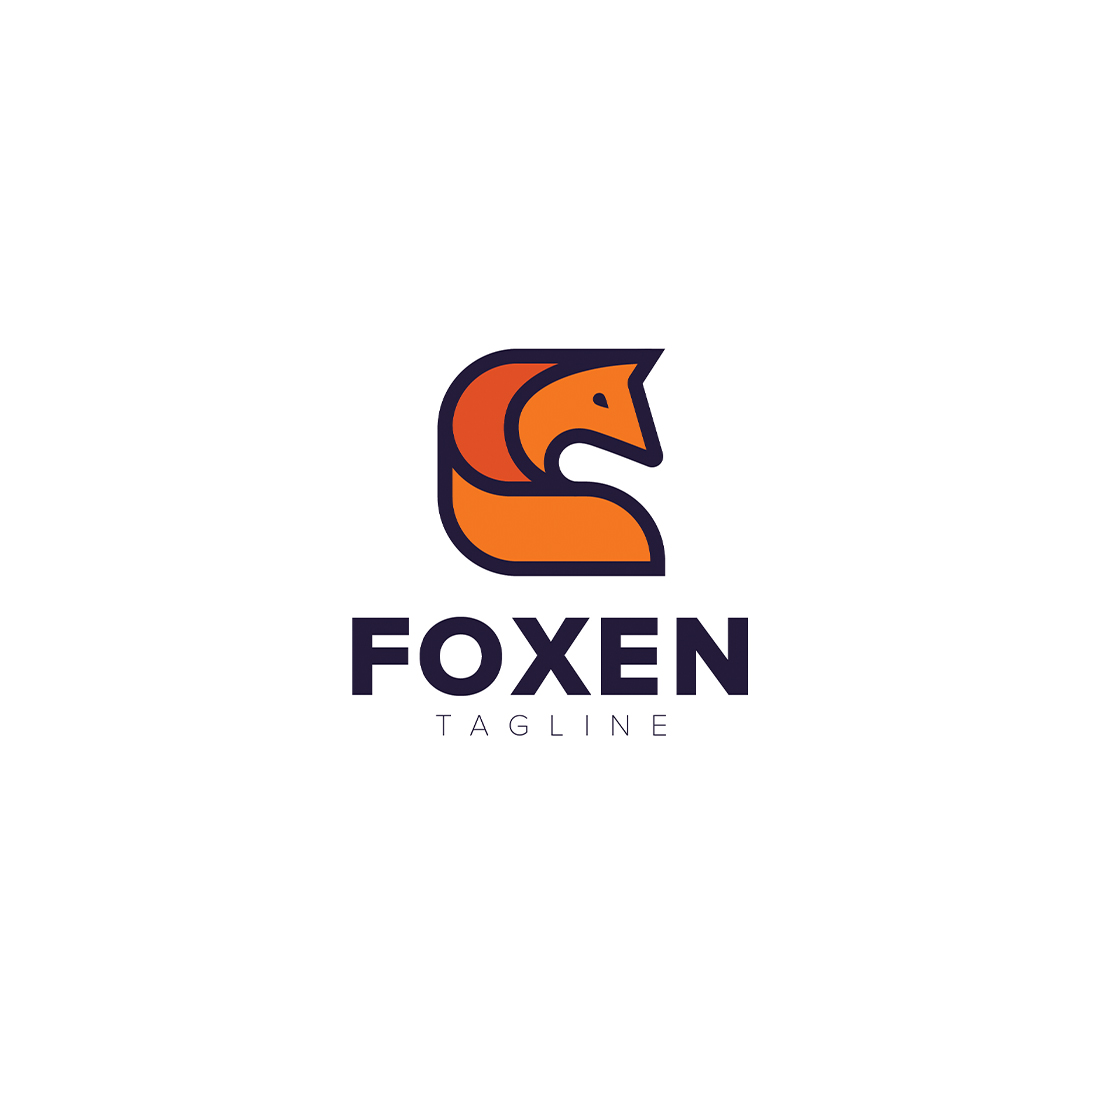 Foxen Logo Template main cover.